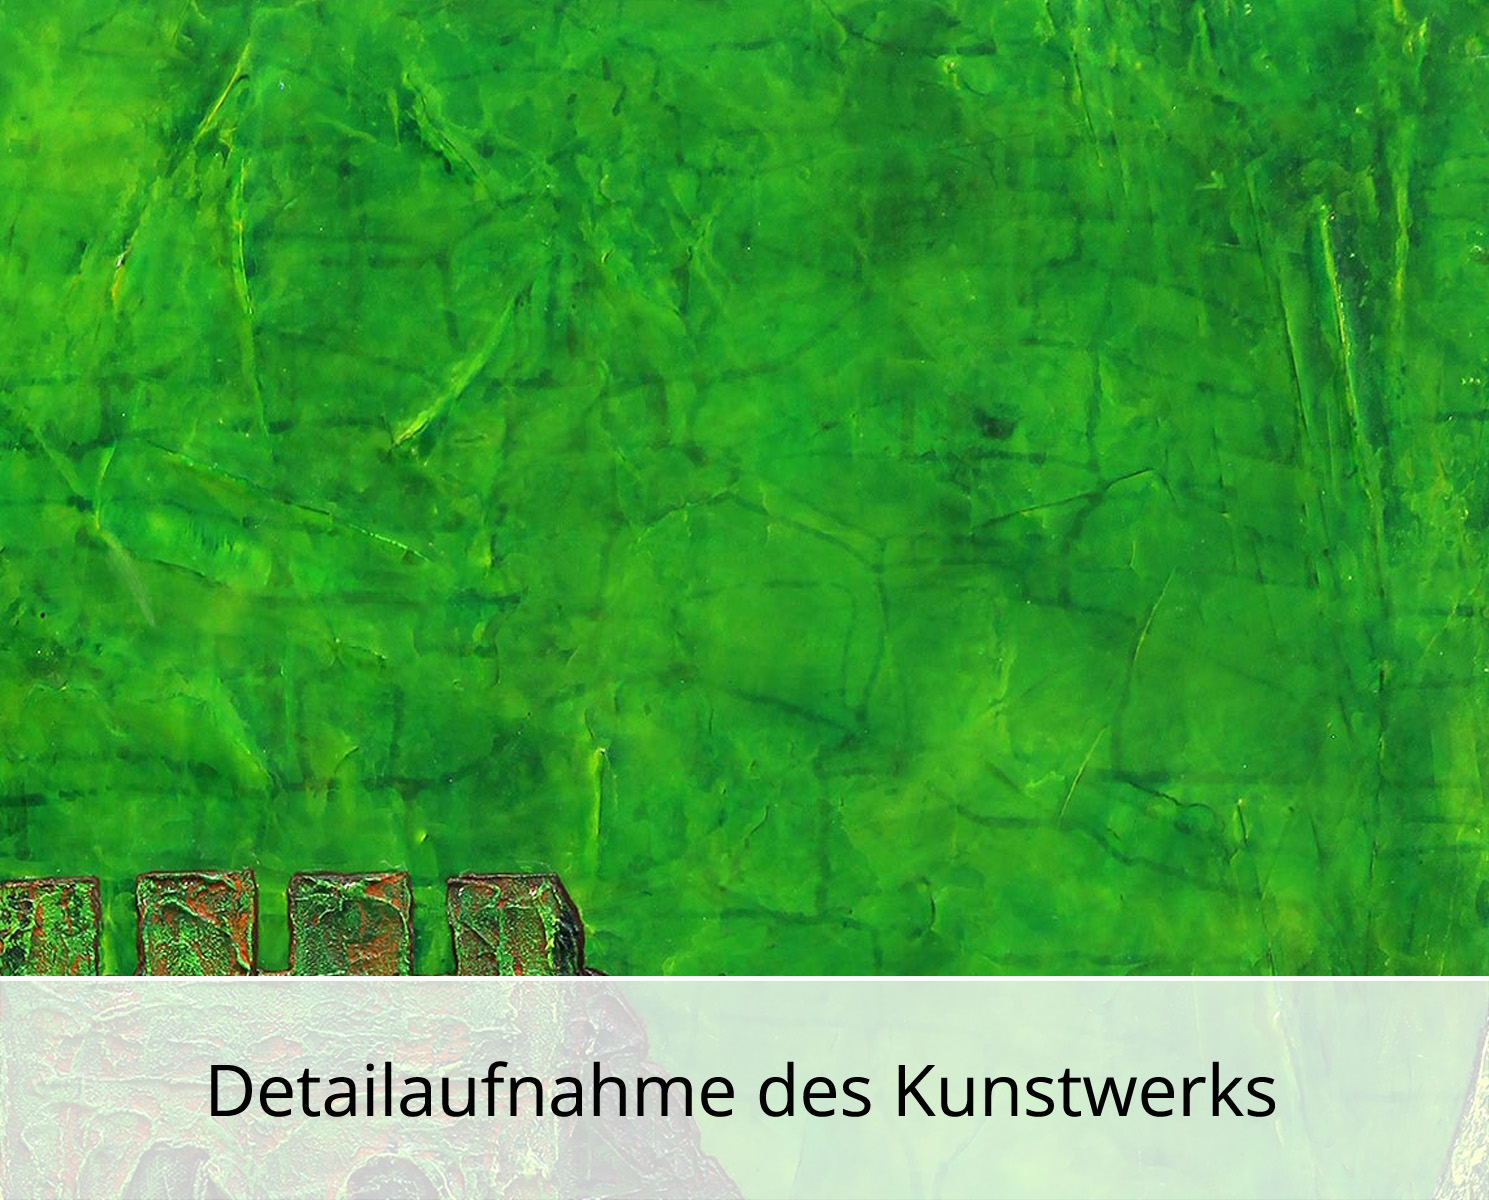 A. Garbe: "Schutzwall", Edition, signierter Kunstdruck